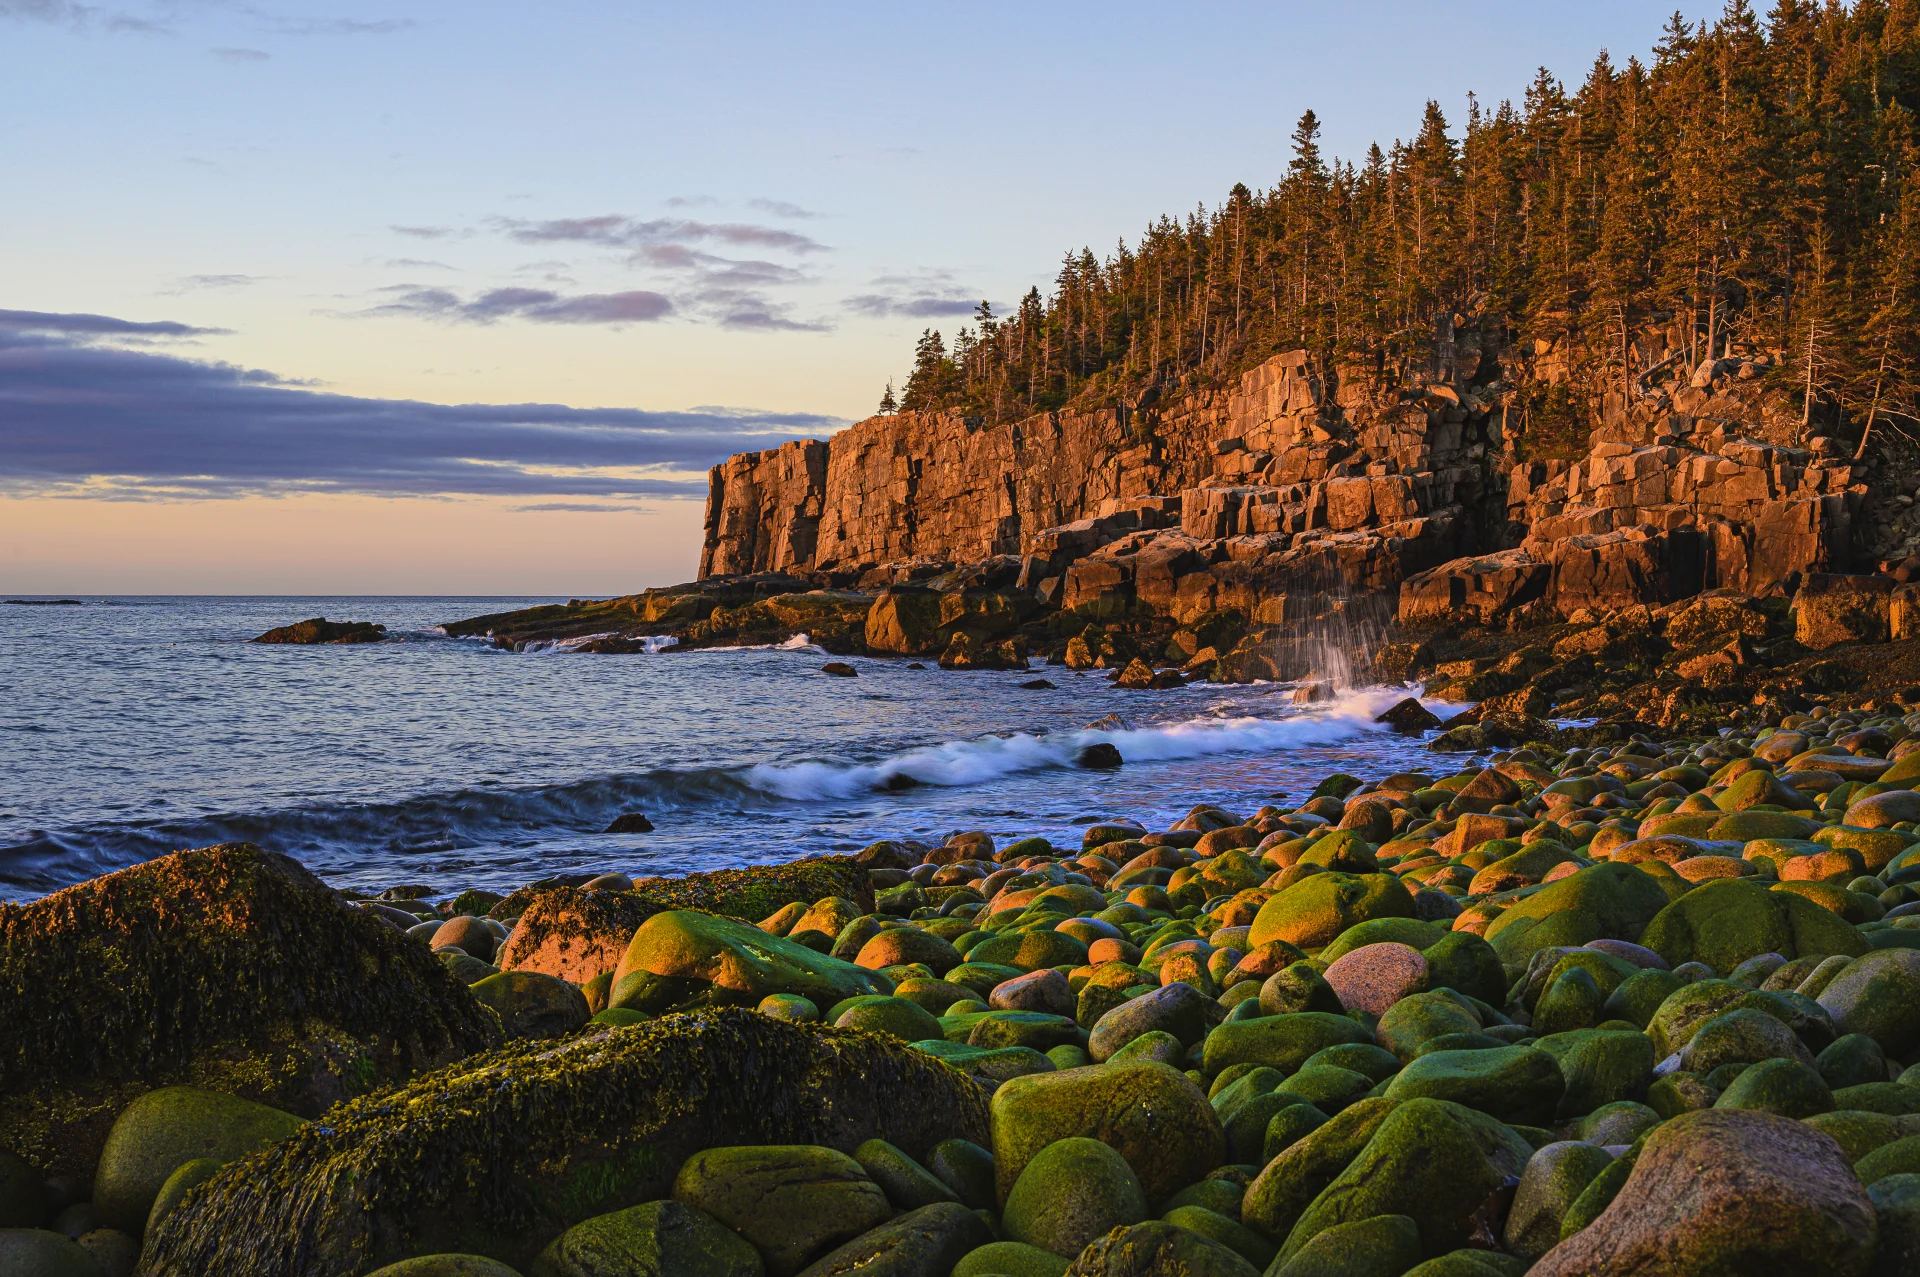 Historie, sjømat og naturreservater | Halifax til Boston